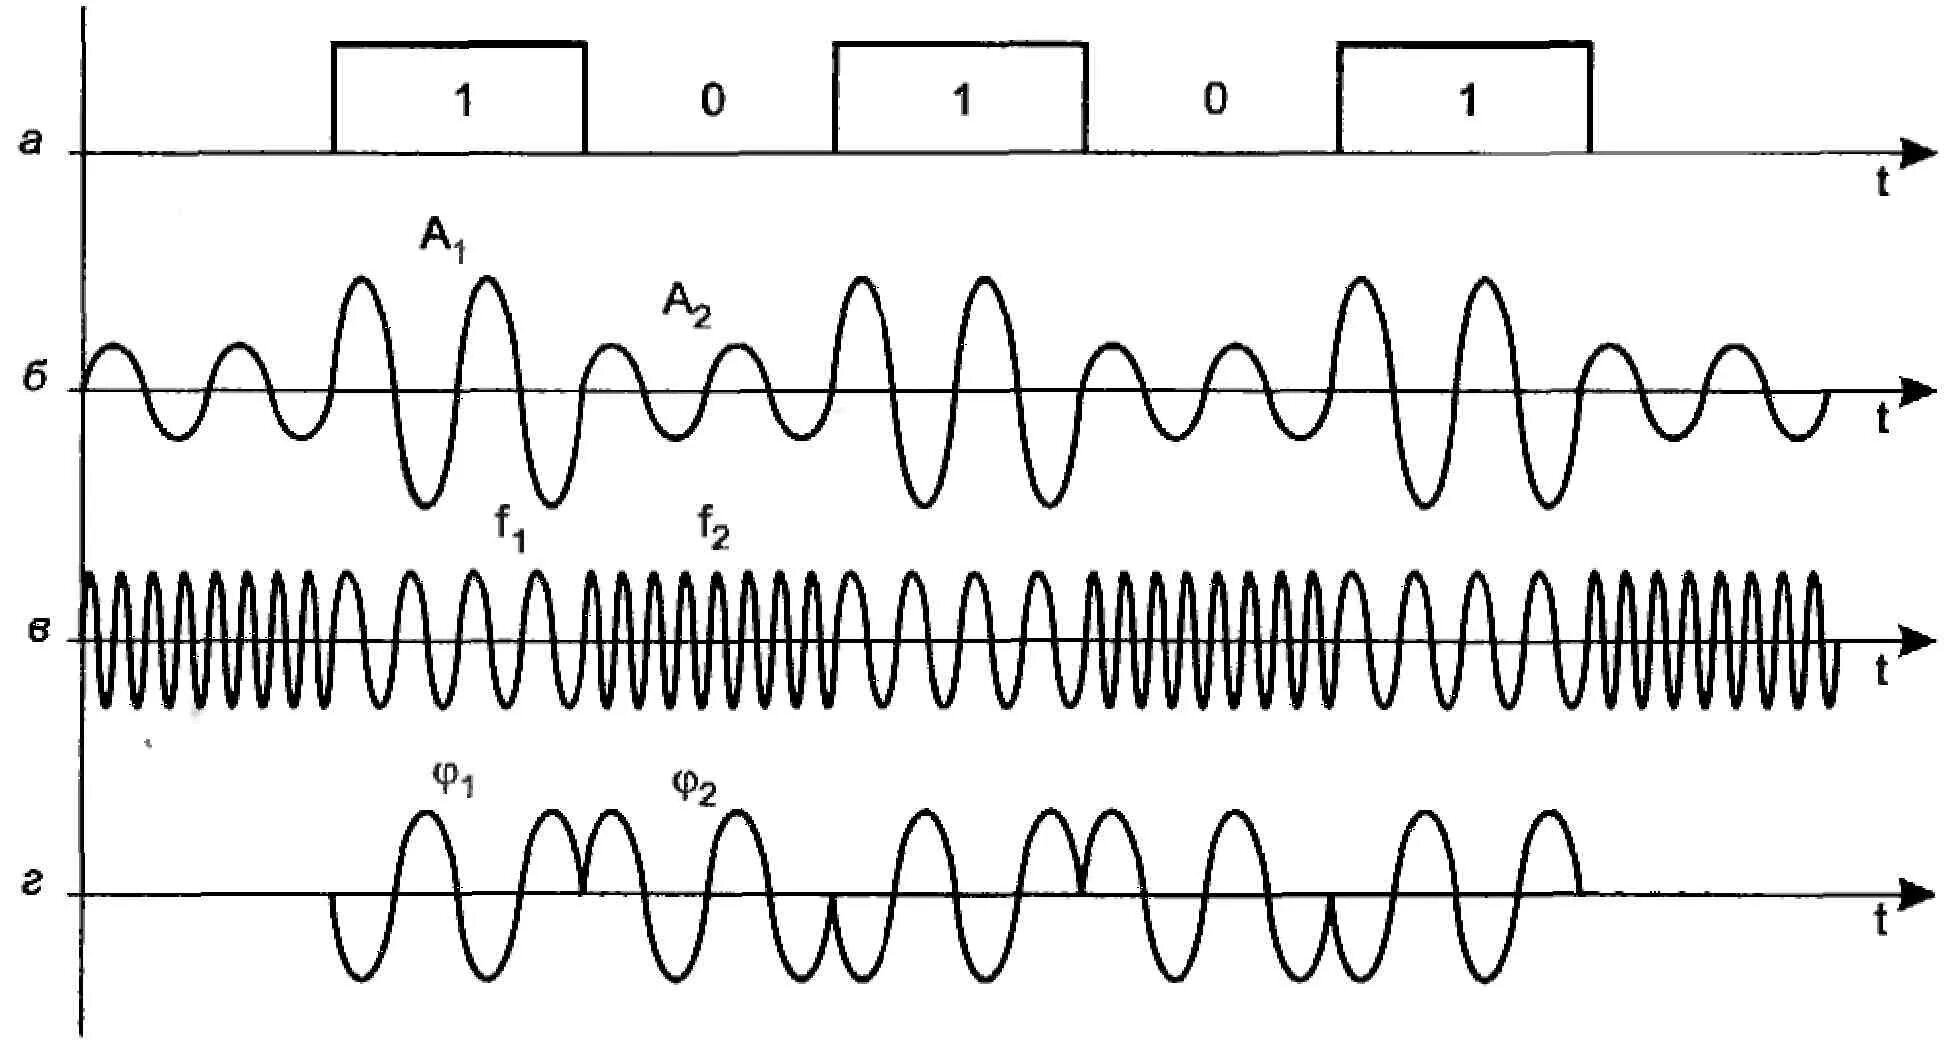 Дискретная передача сигналов. Амплитудная модуляция цифрового сигнала. Схема модуляция амплитудная фазовая частотная. Временная диаграмма фазомодулированного сигнала. Виды модуляции сигналов.